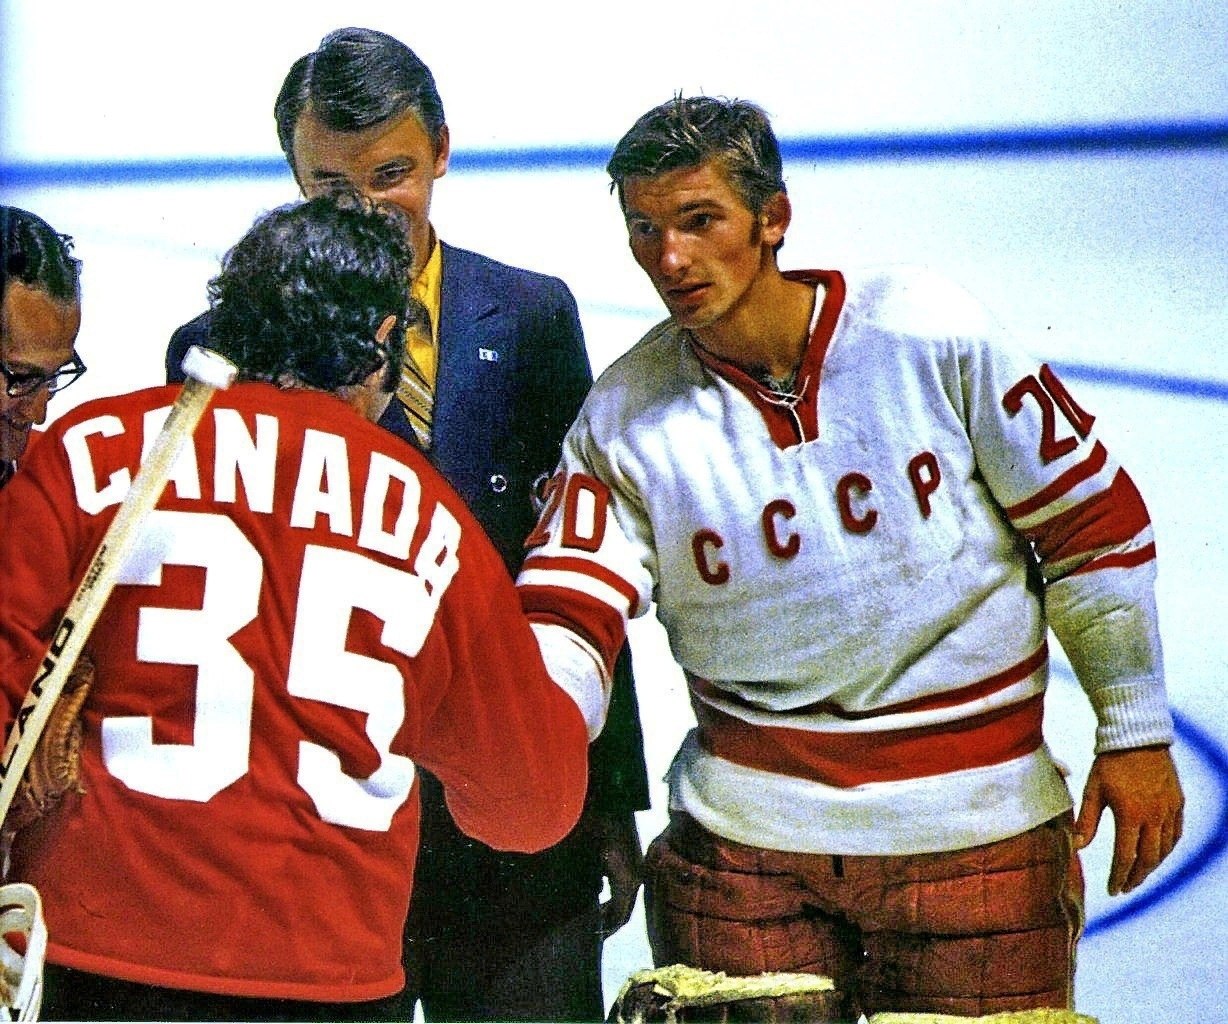 О хоккейном матче сборной советского союза